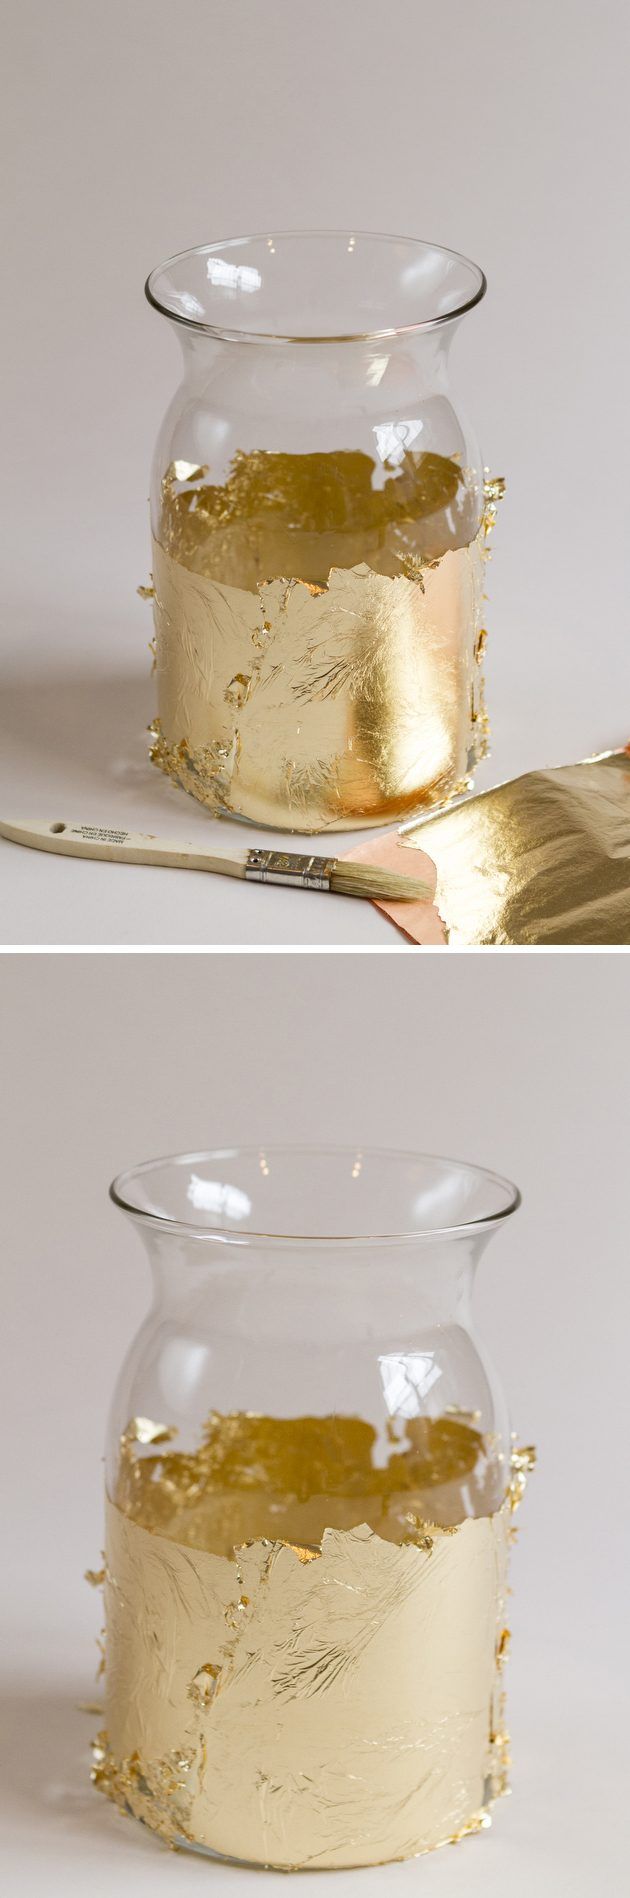 Appliquer la feuille d'or uniformément autour de la vase.